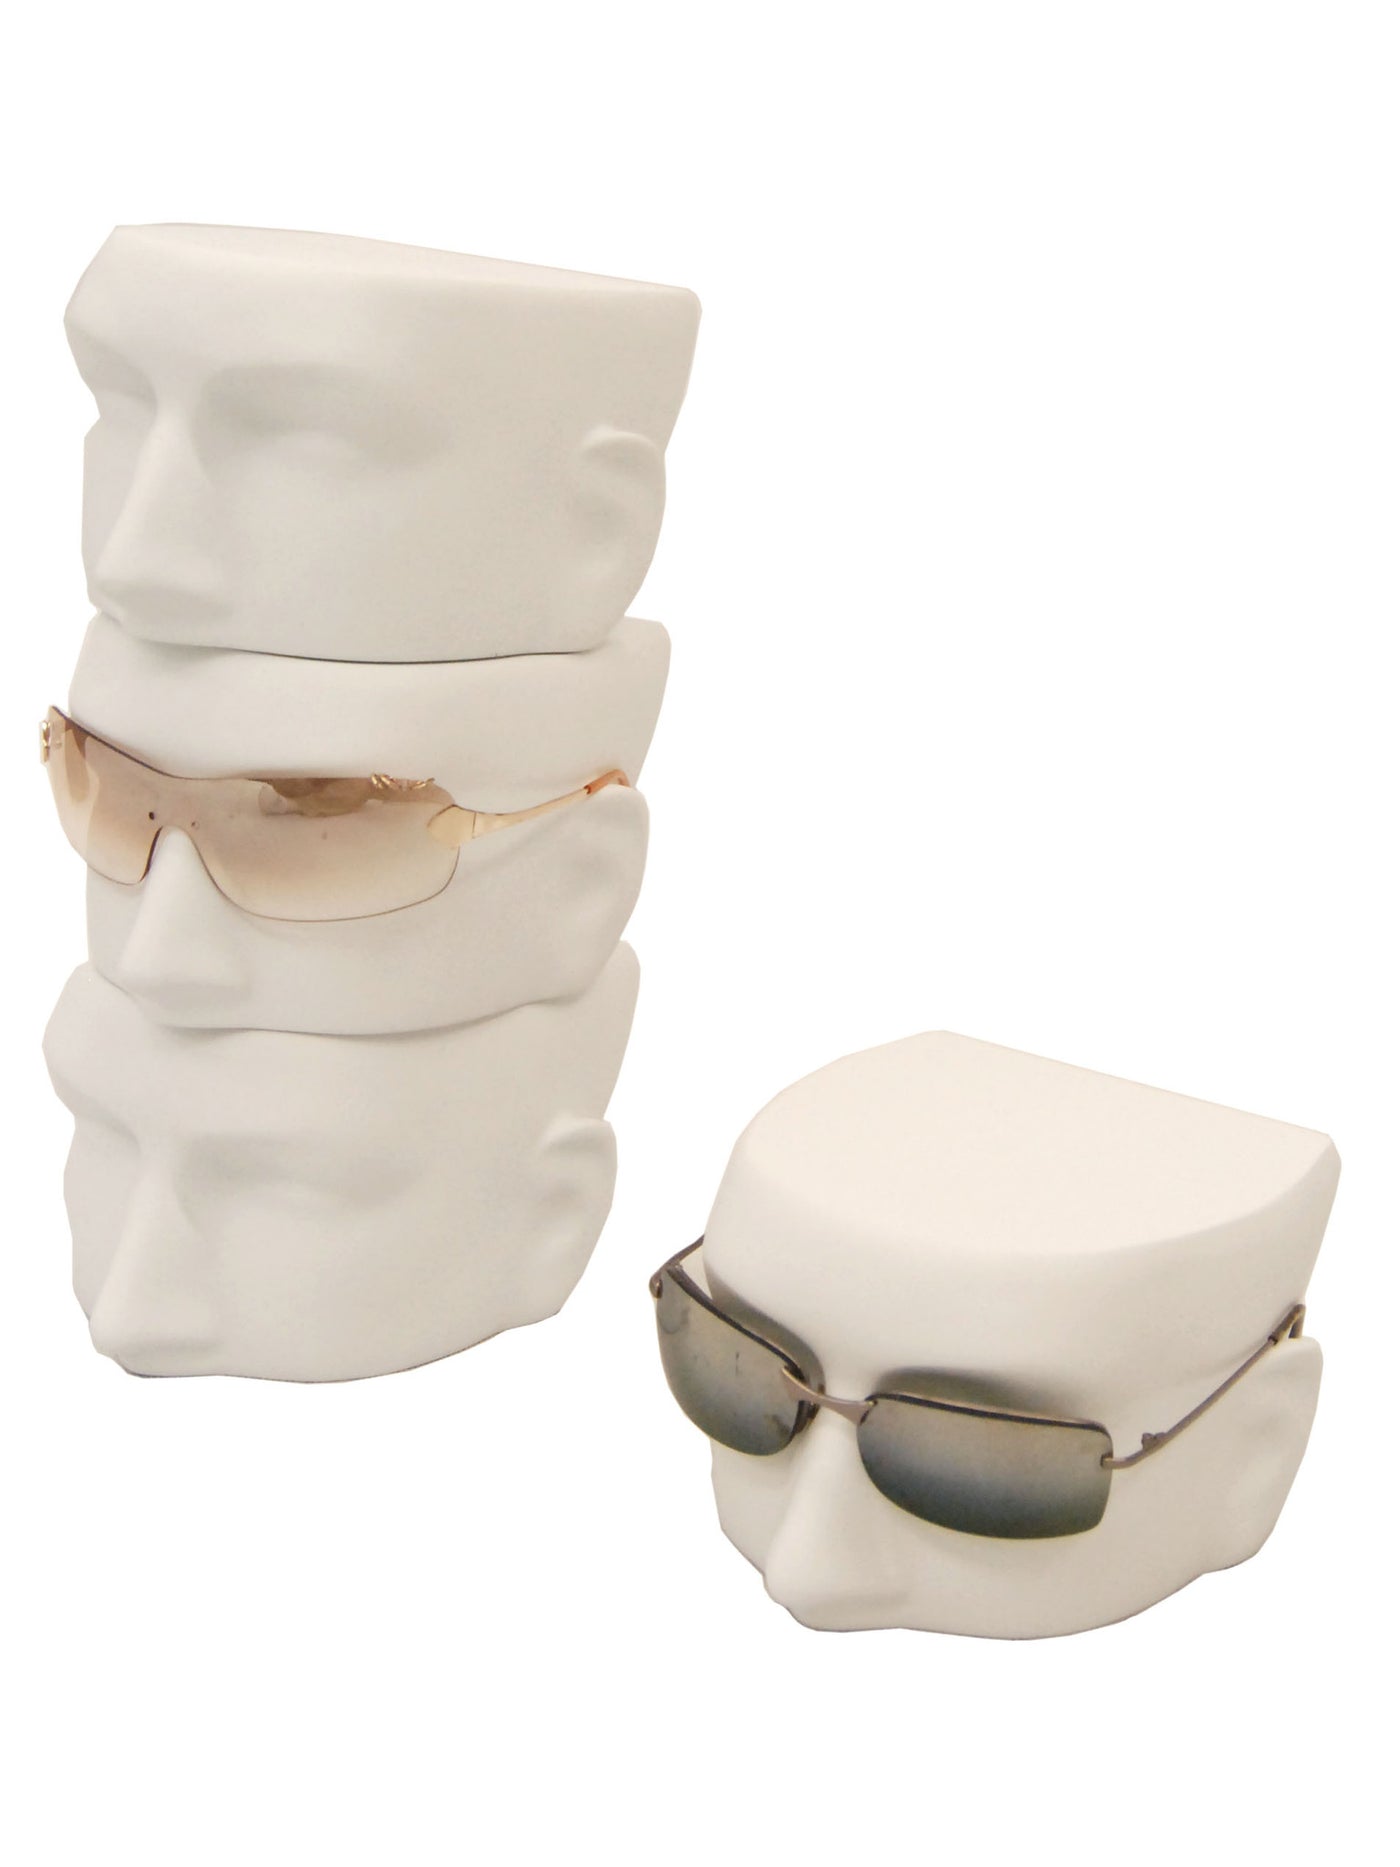 White Eyeglasses Display Head: 4-Pack Male